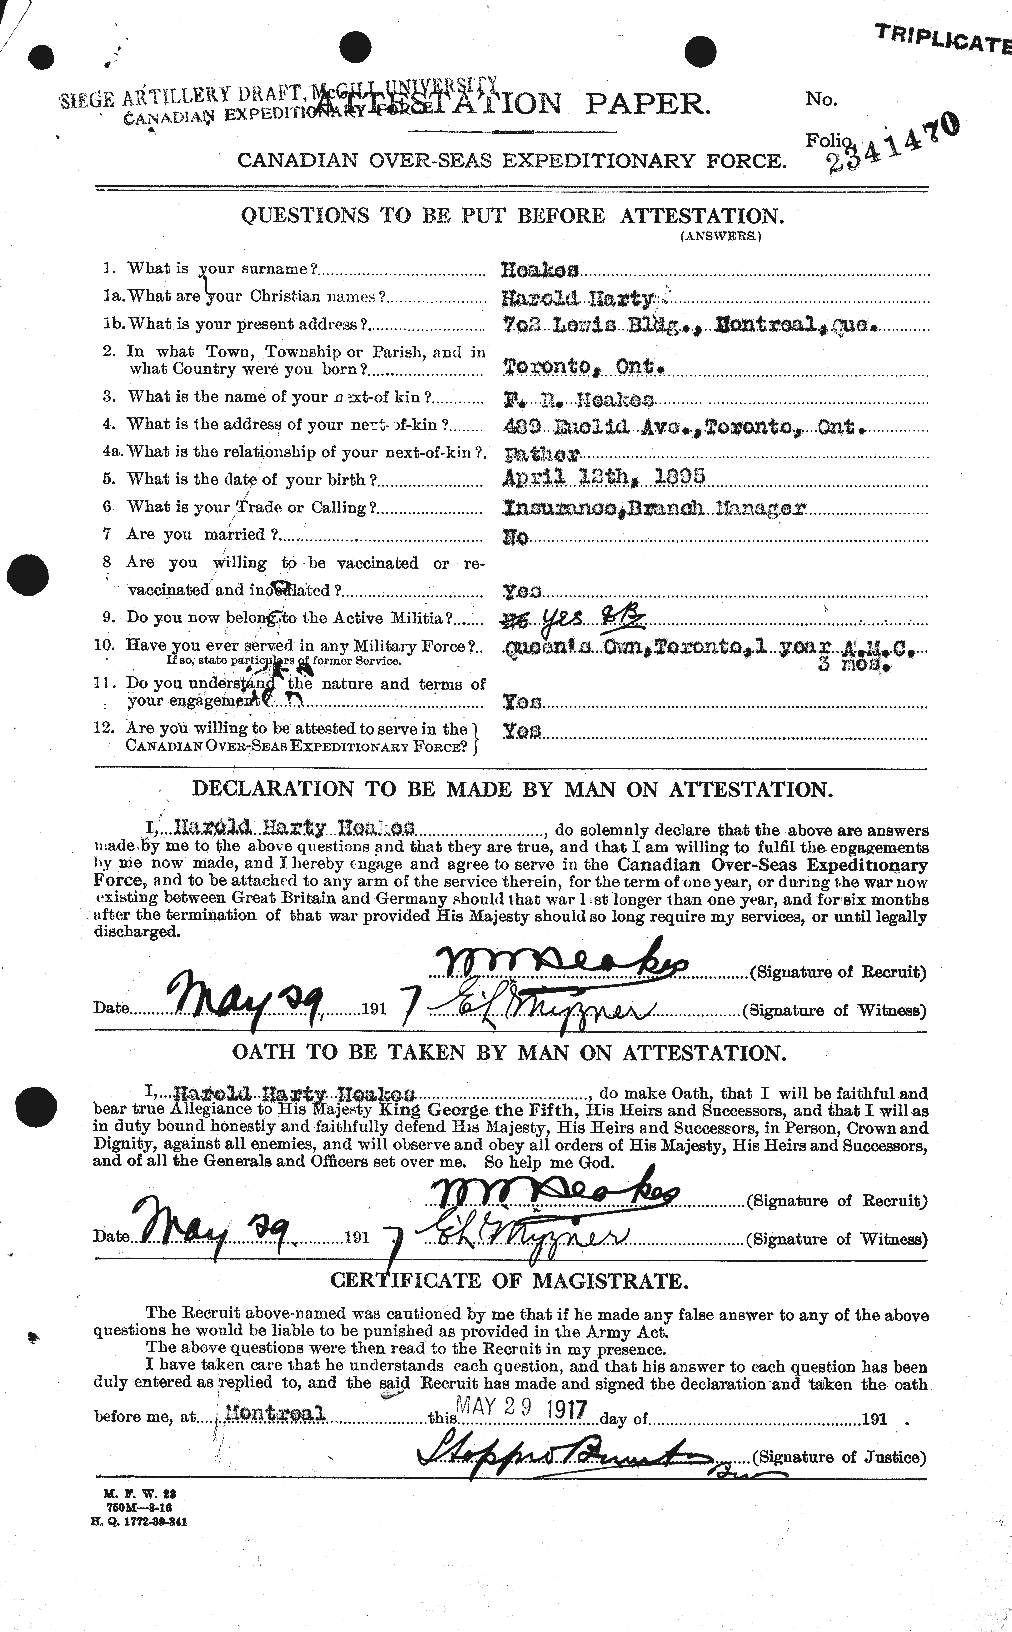 Dossiers du Personnel de la Première Guerre mondiale - CEC 383738a